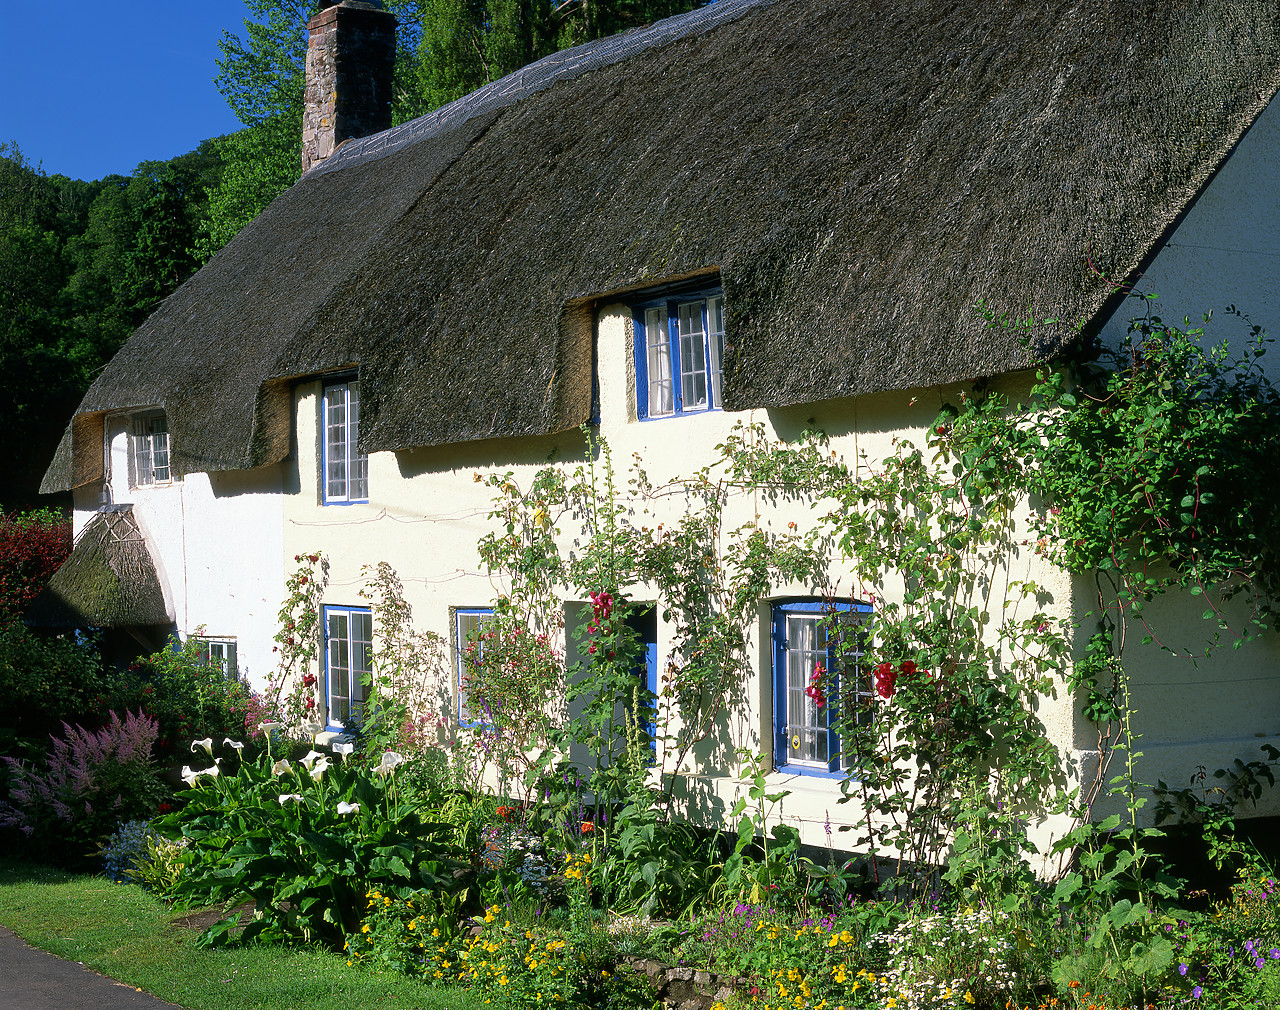 #020638-3 - Thatch Cottage, Dunster, Somerset, England